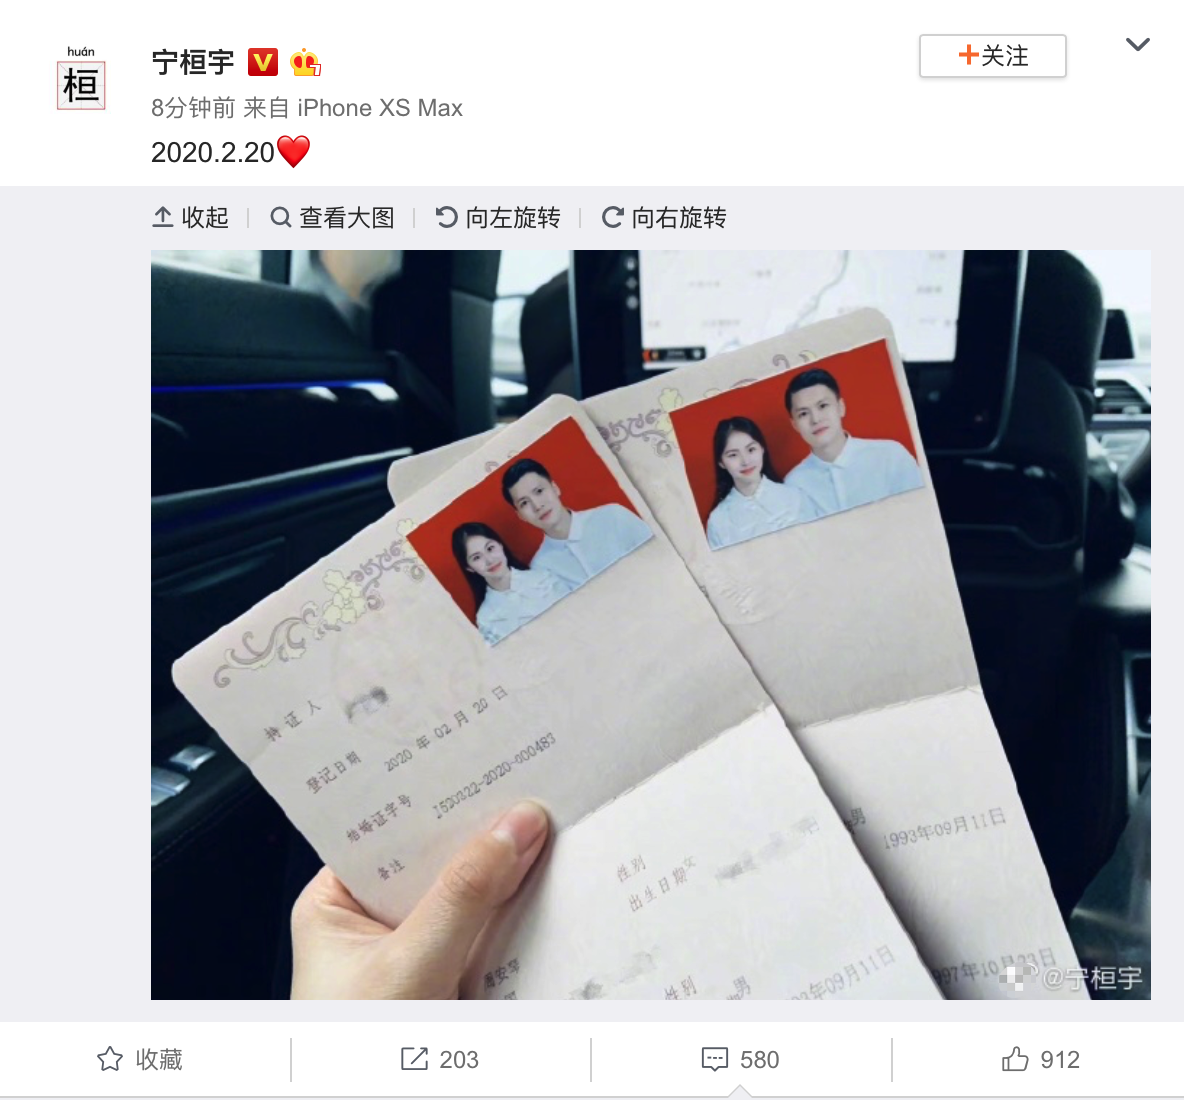 13届快男宁桓宇晒出结婚证宣布结婚喜讯,并配文2020